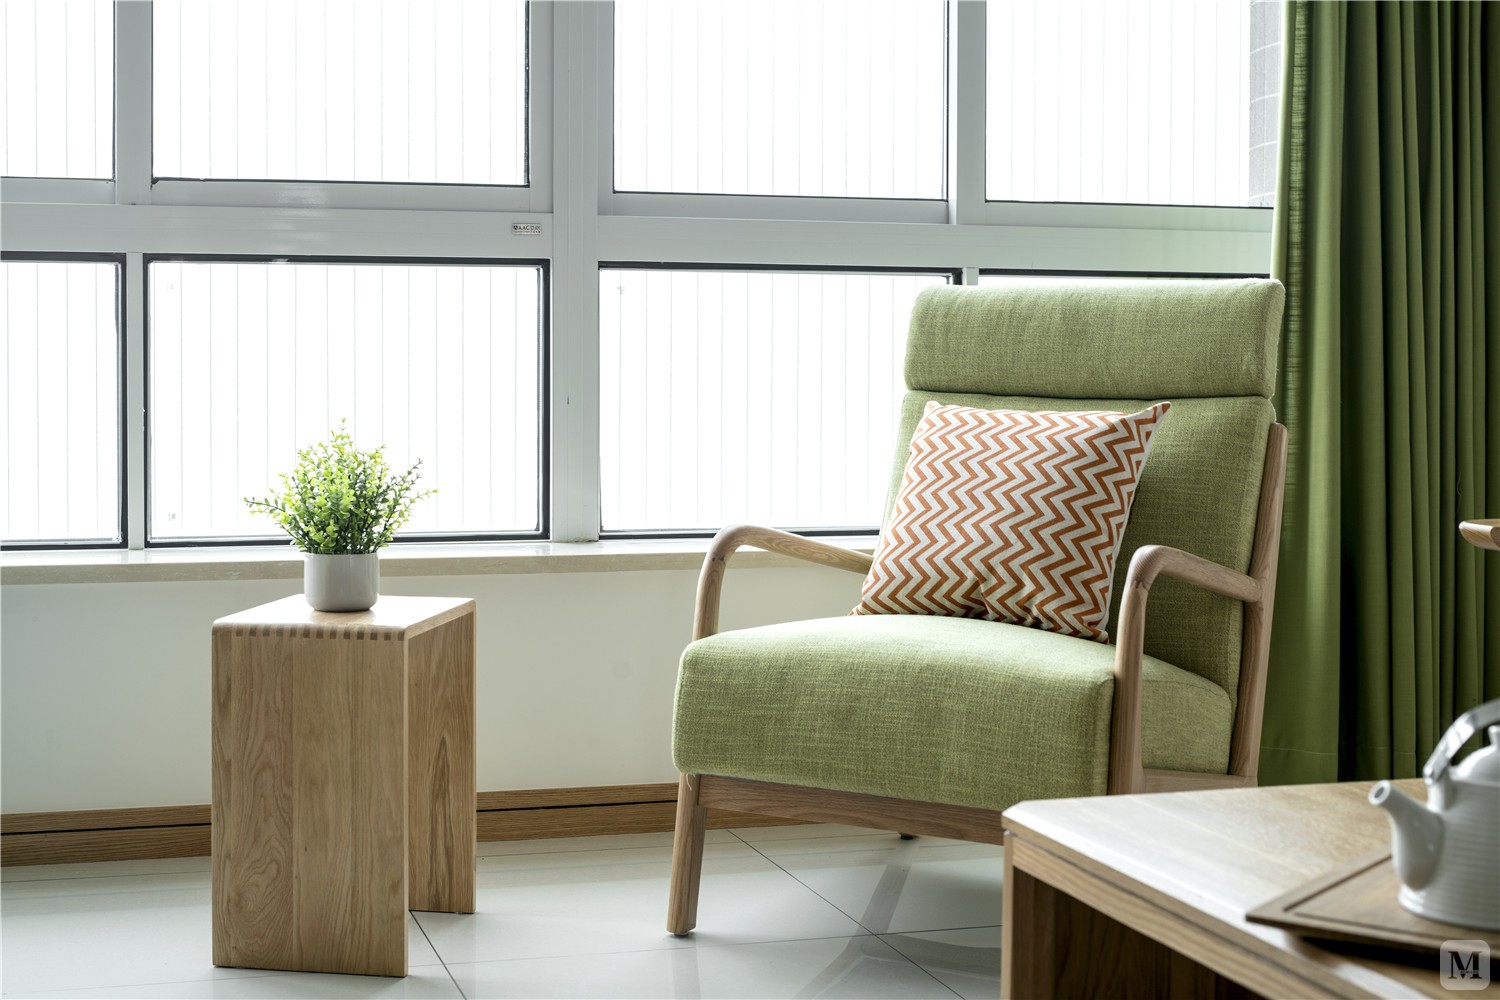 客厅主要以浅色调和极简设计为特色，它以简洁干净的纯白为底色，点缀以抹茶绿的软装，将不断变化的自然光线收入室内，隐隐透露出一种舒适、温暖的感觉。